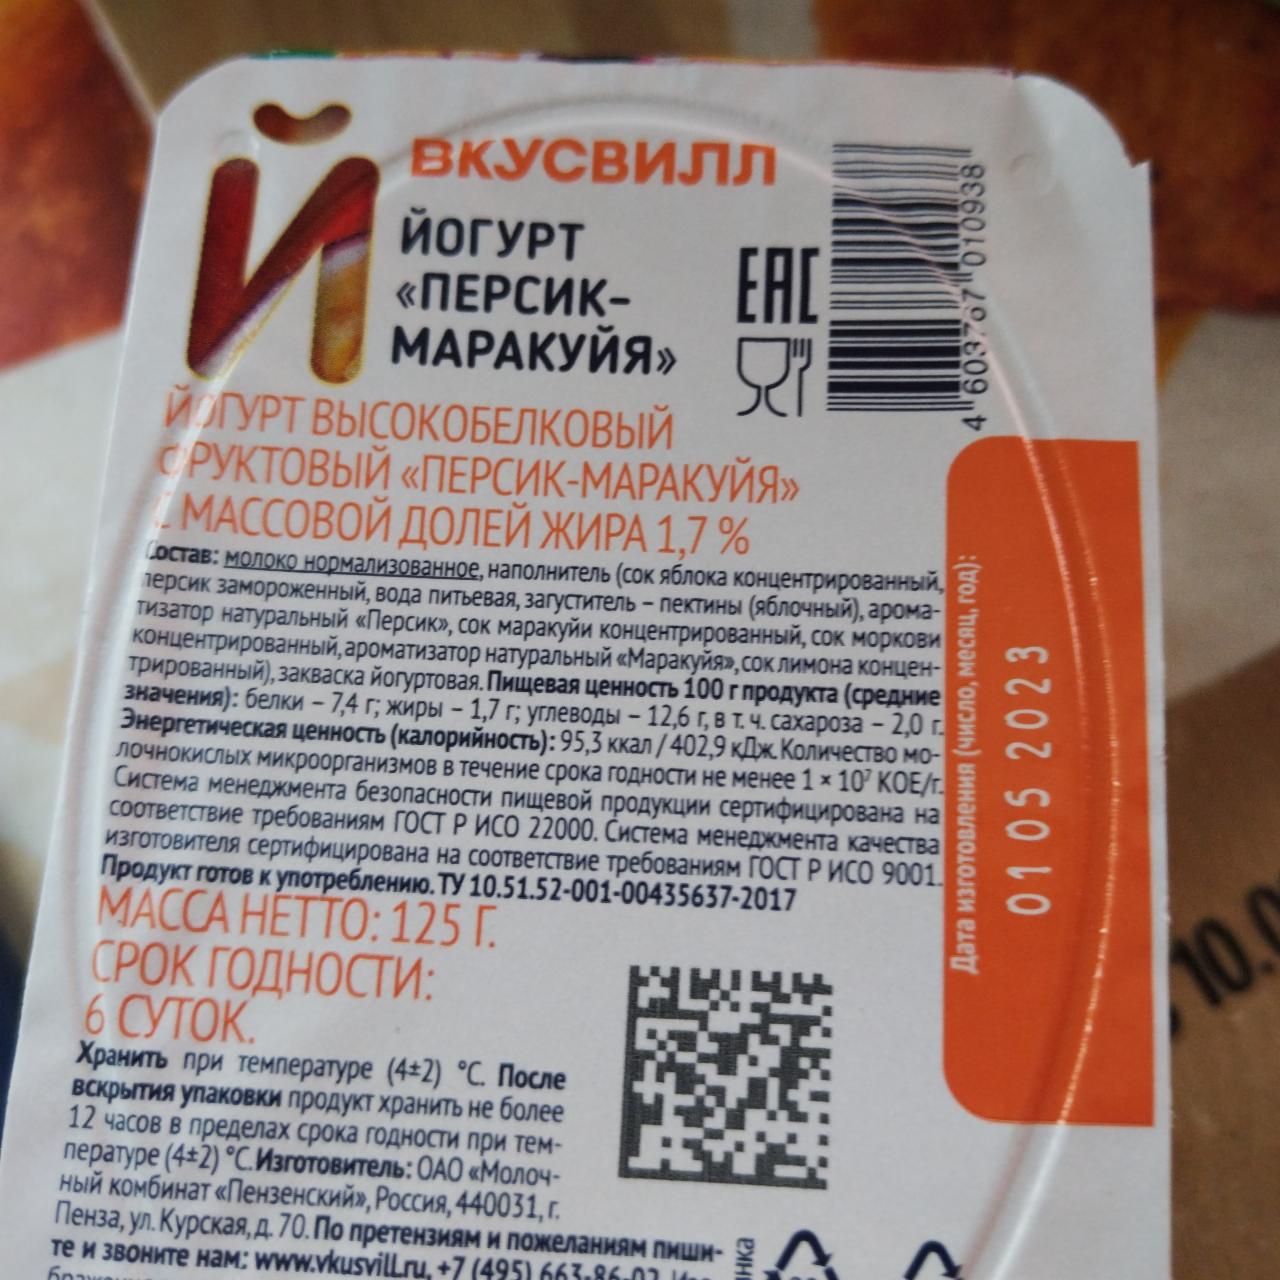 Фото - Йогурт 1.7% Персик-маракуйя высокобелковый ВкусВилл